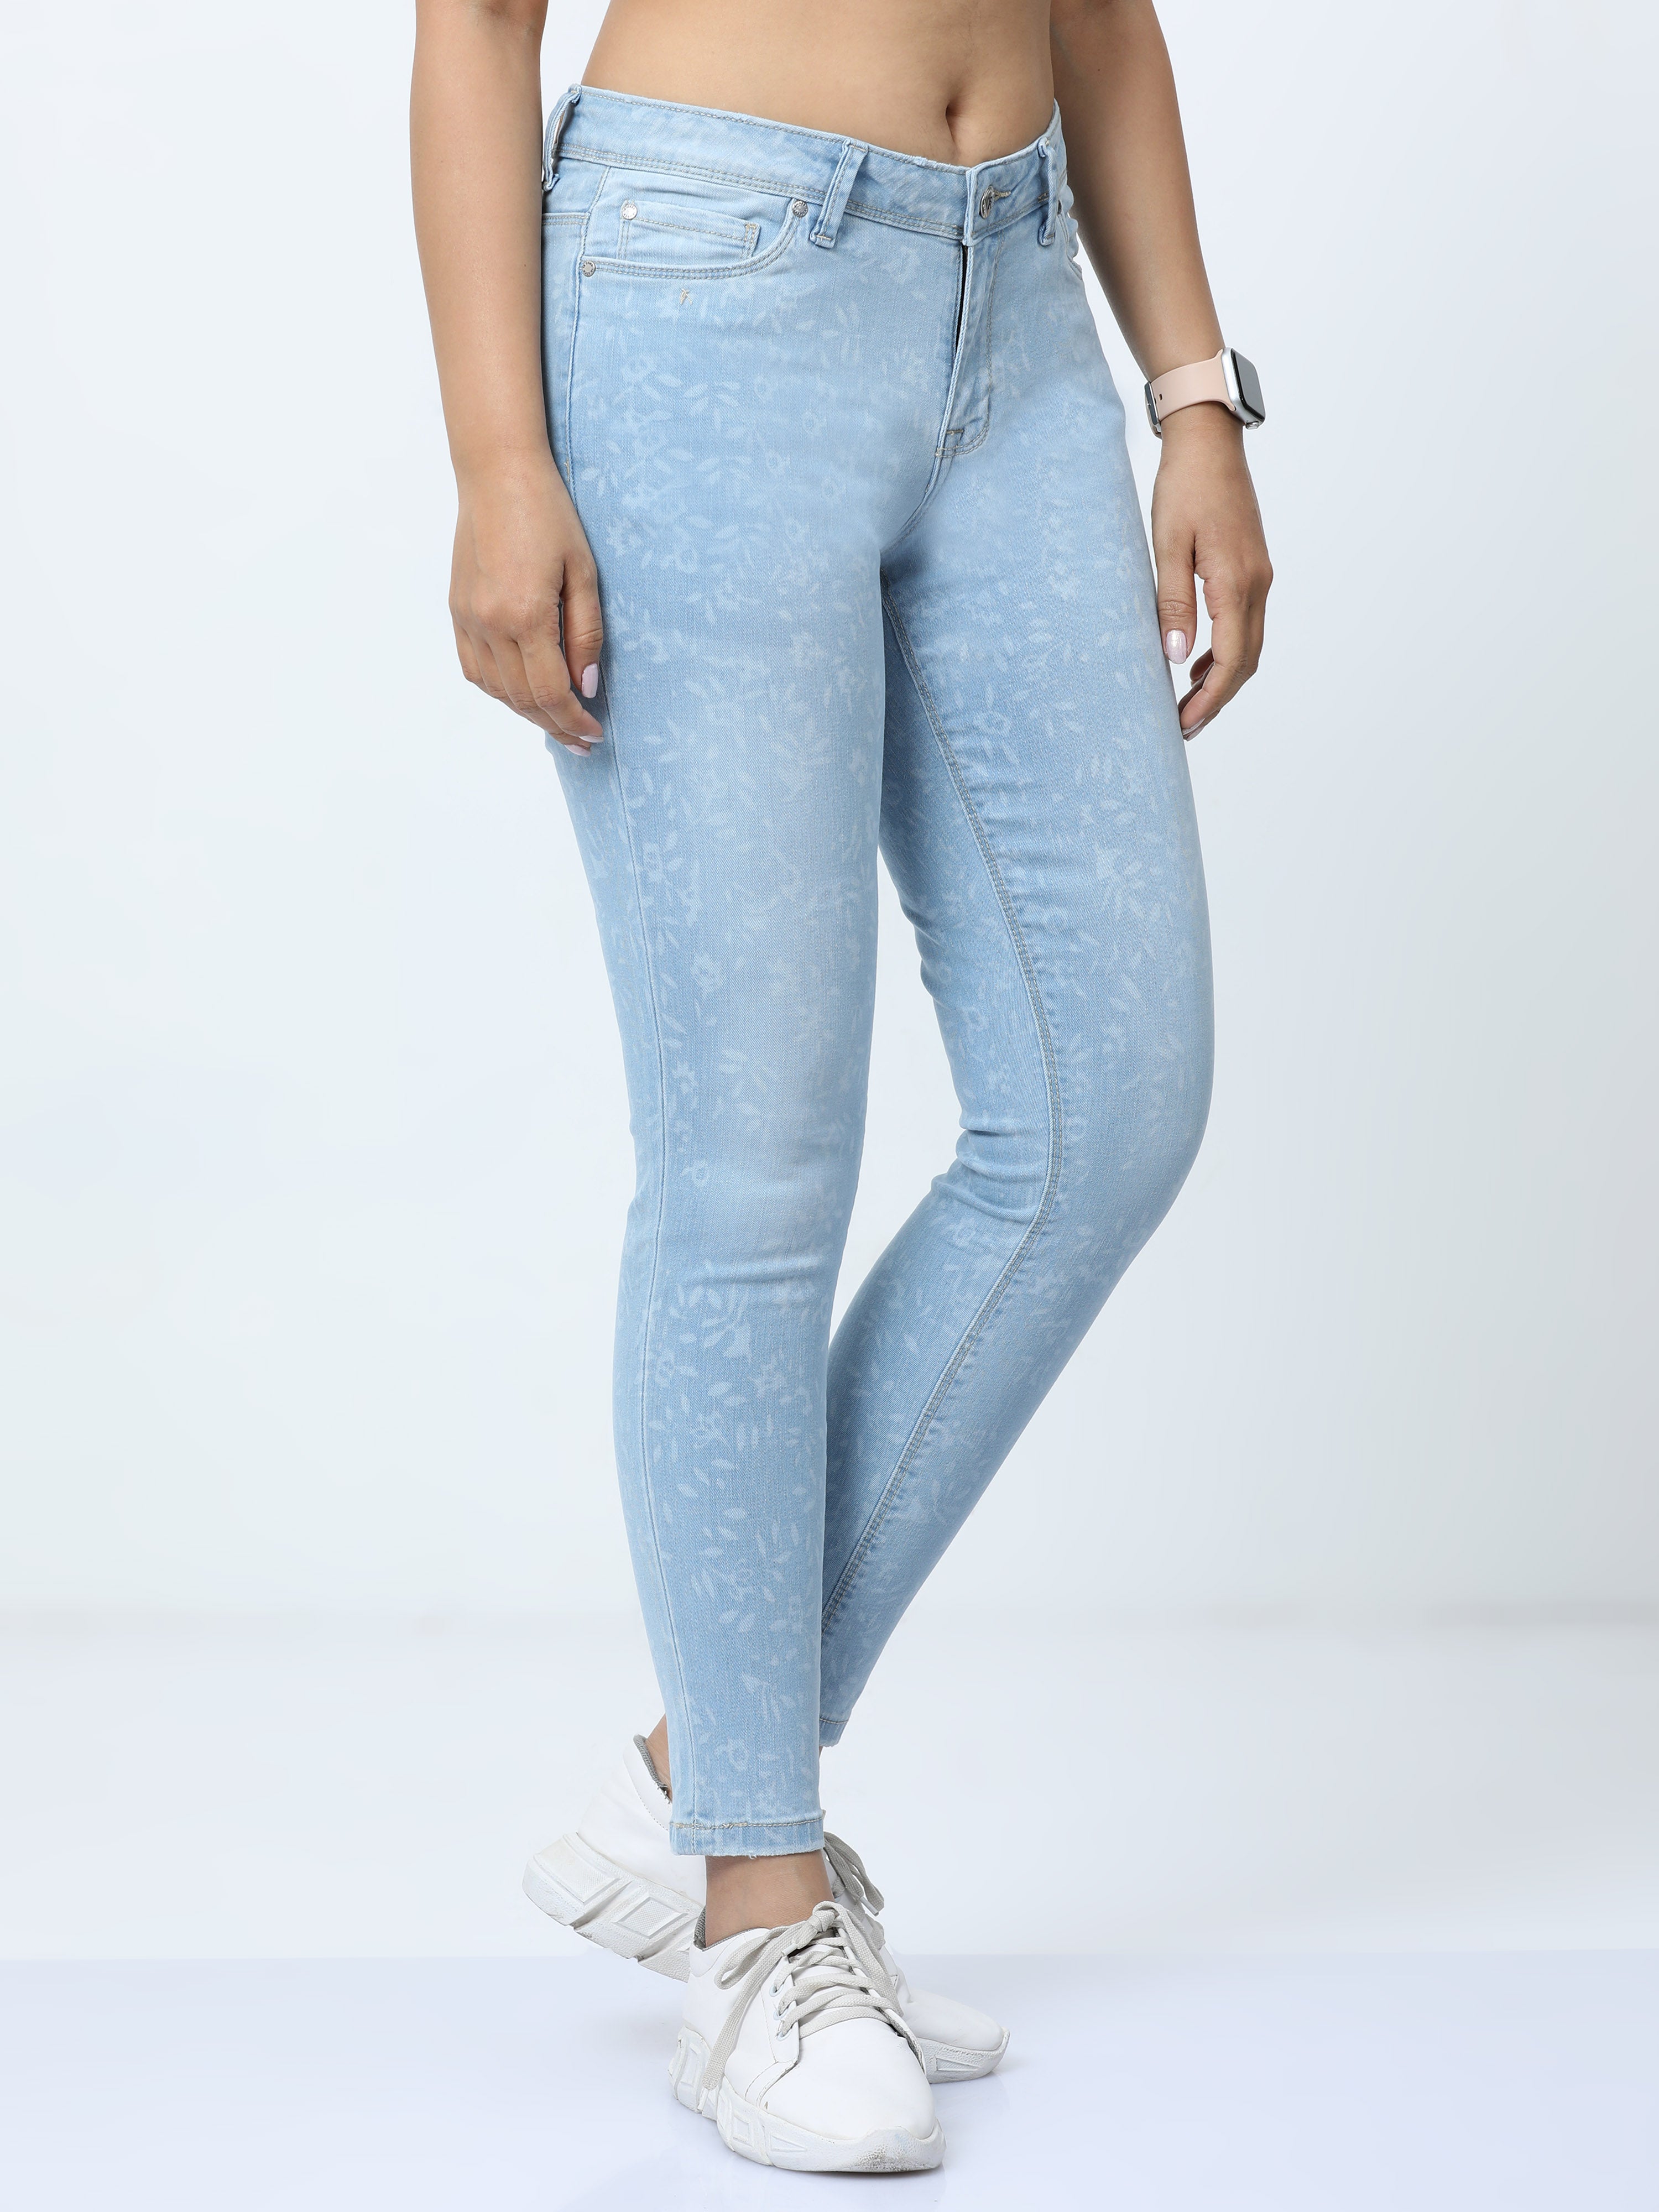 Pantone mild bleach womens slim fit jeans